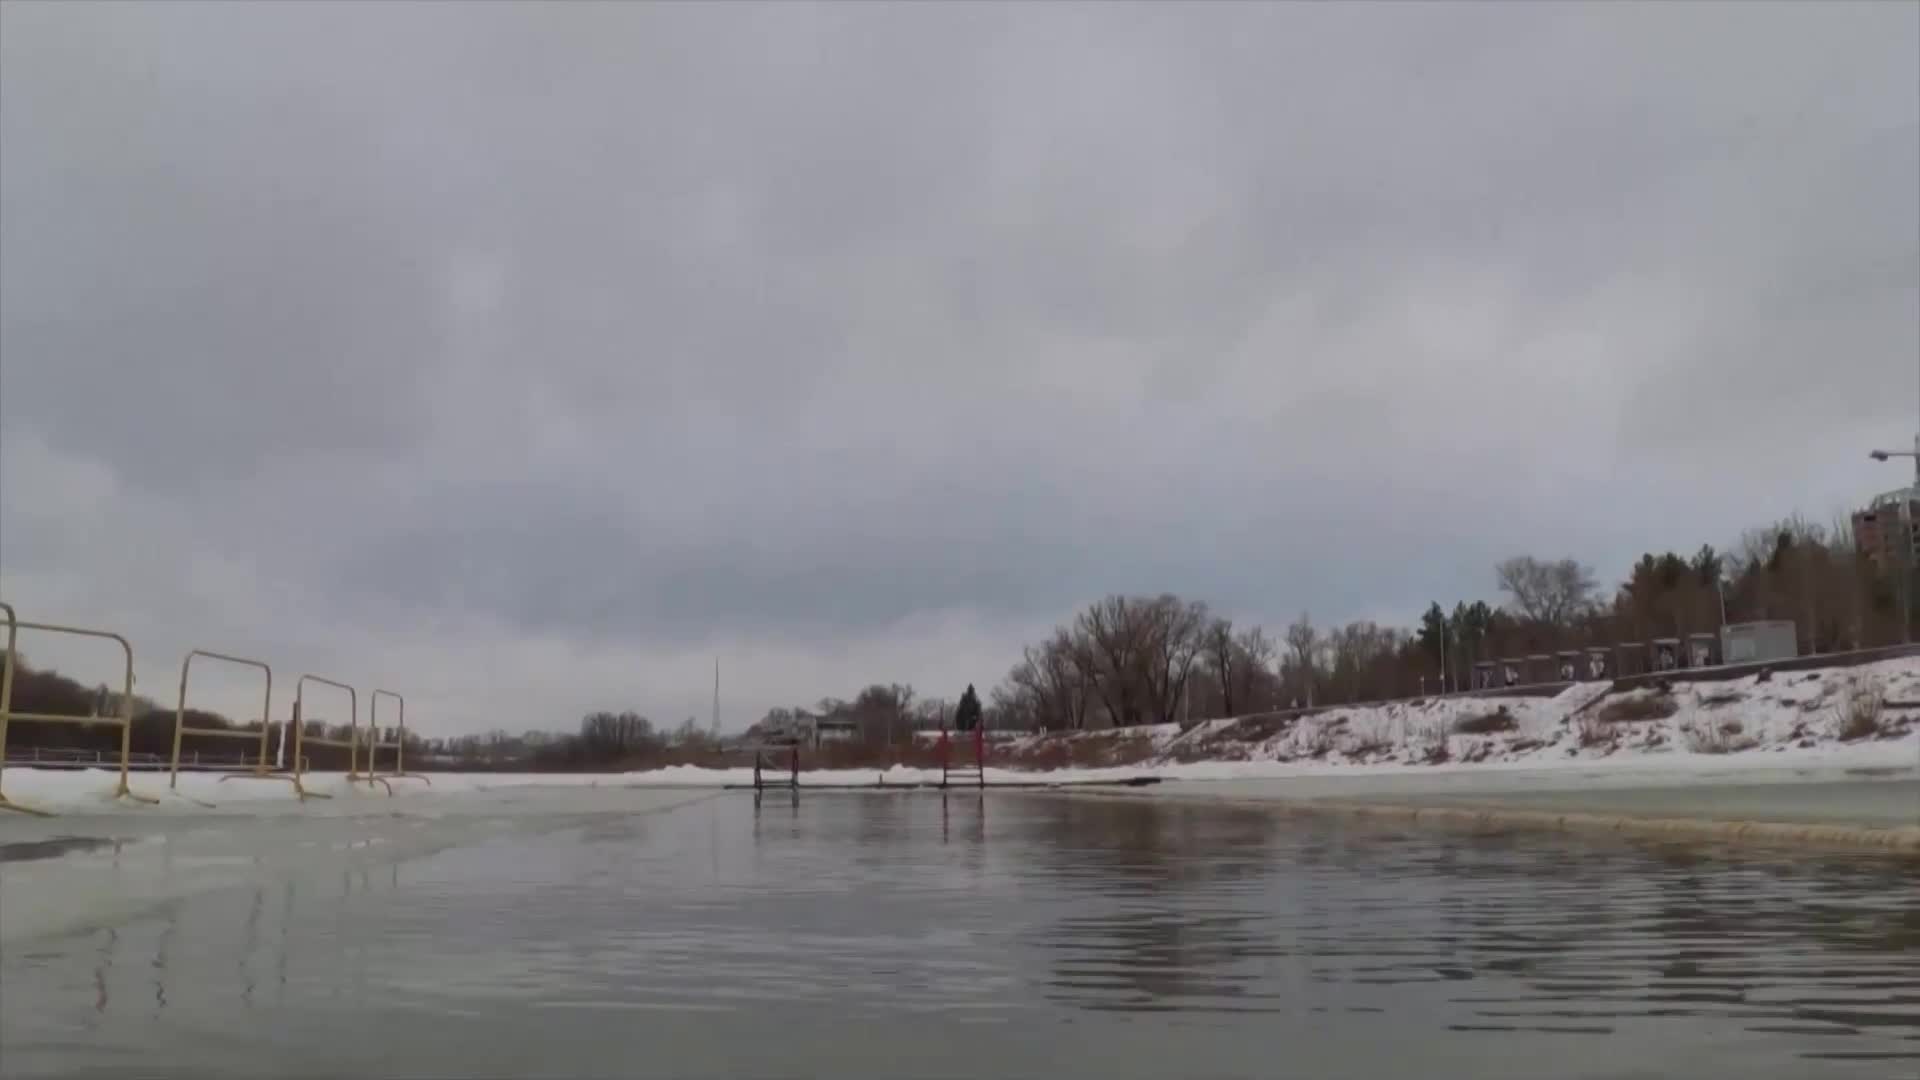 Десетки се потопиха в ледените води на река в Сибир (ВИДЕО)